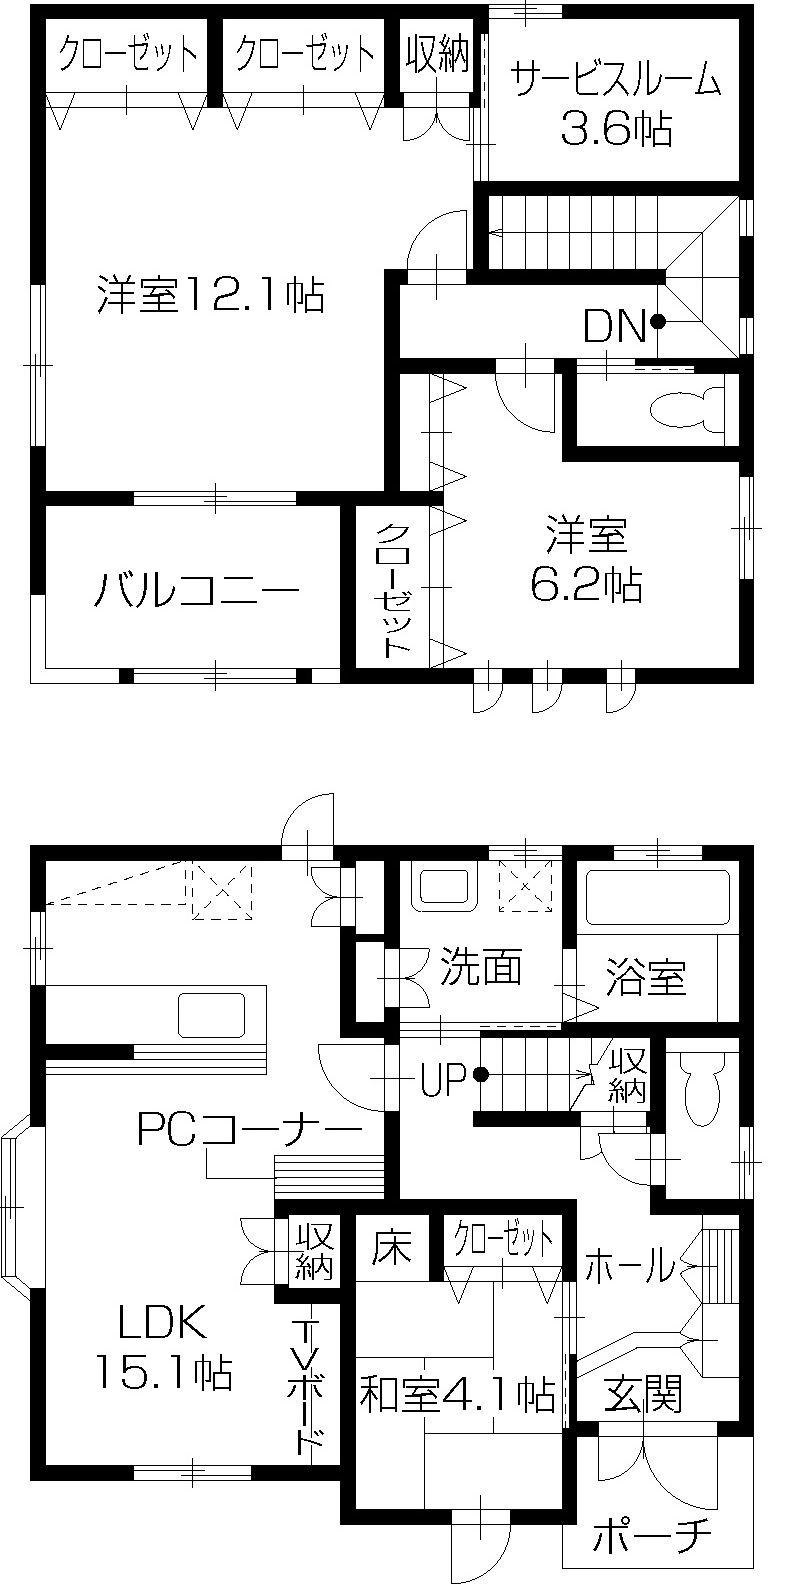 Floor plan. 29,800,000 yen, 3LDK + S (storeroom), Land area 132.25 sq m , Building area 109.25 sq m